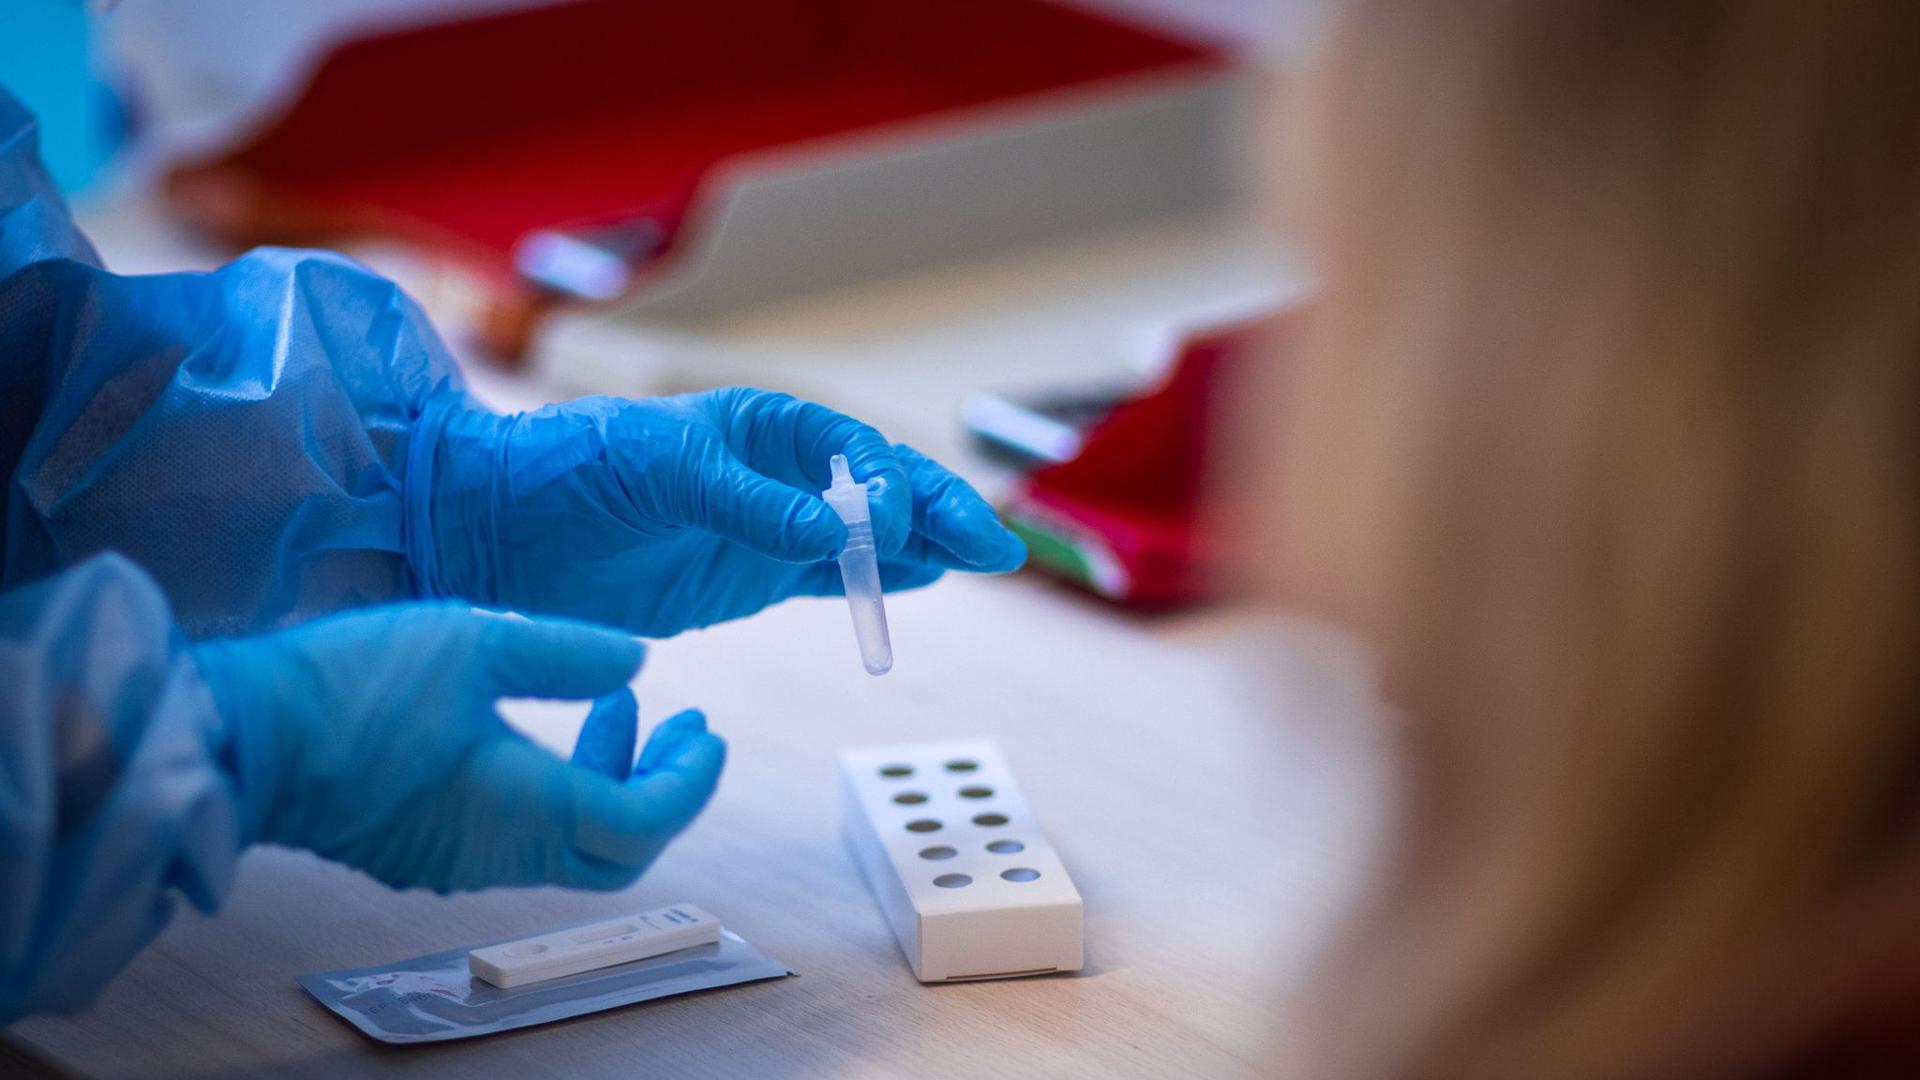 Ein Antigen-Test auf Covid-19 wird nach der Eröffnung des kommunalen Corona-Testzentrums des Landkreises Ludwigslust bearbeitet.